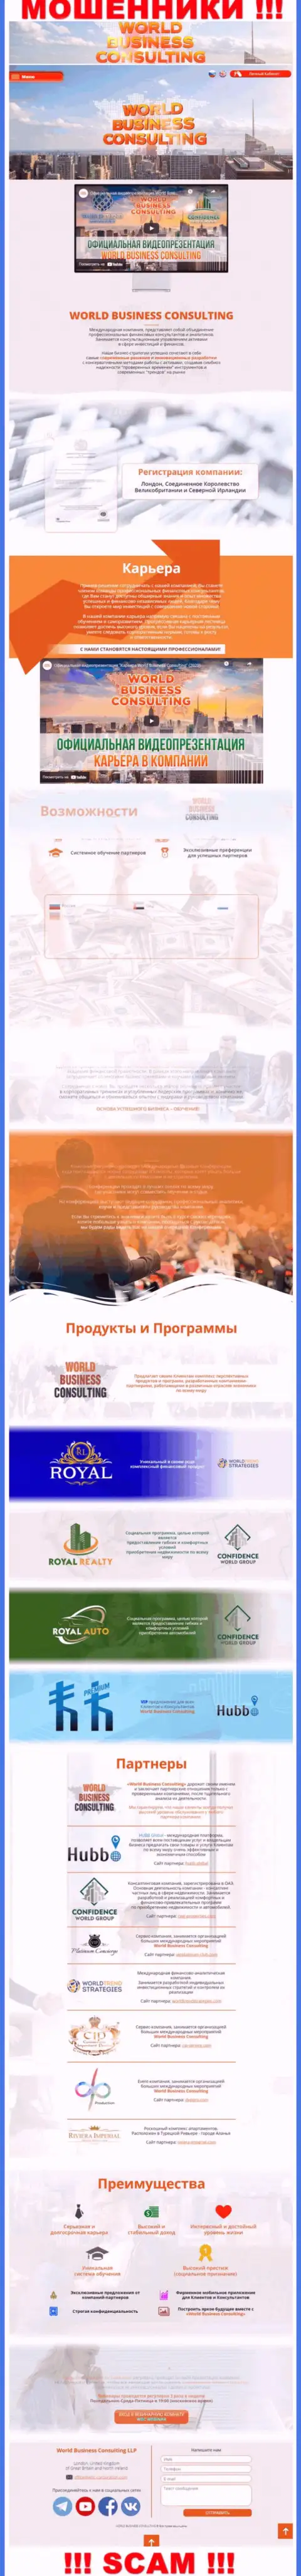 Информационный портал мошенников WBC-Corporation Com